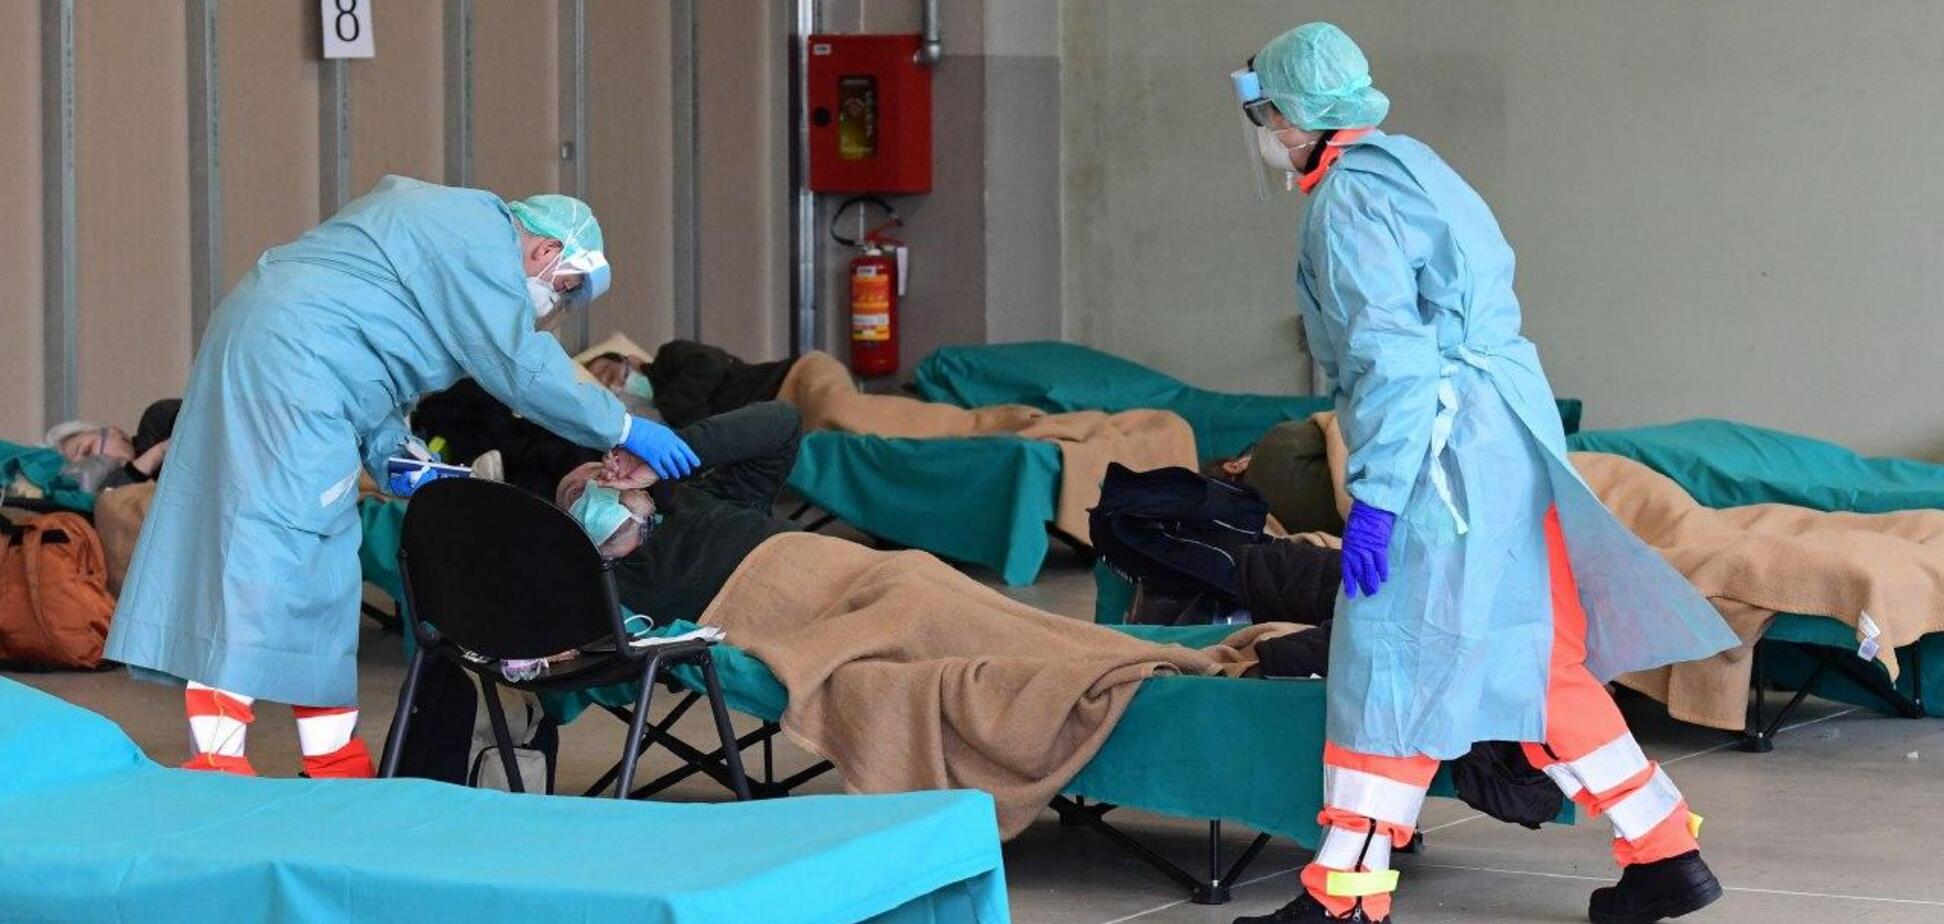 Вперше за декілька днів: в Італії зменшилась кількість загиблих від коронавірусу